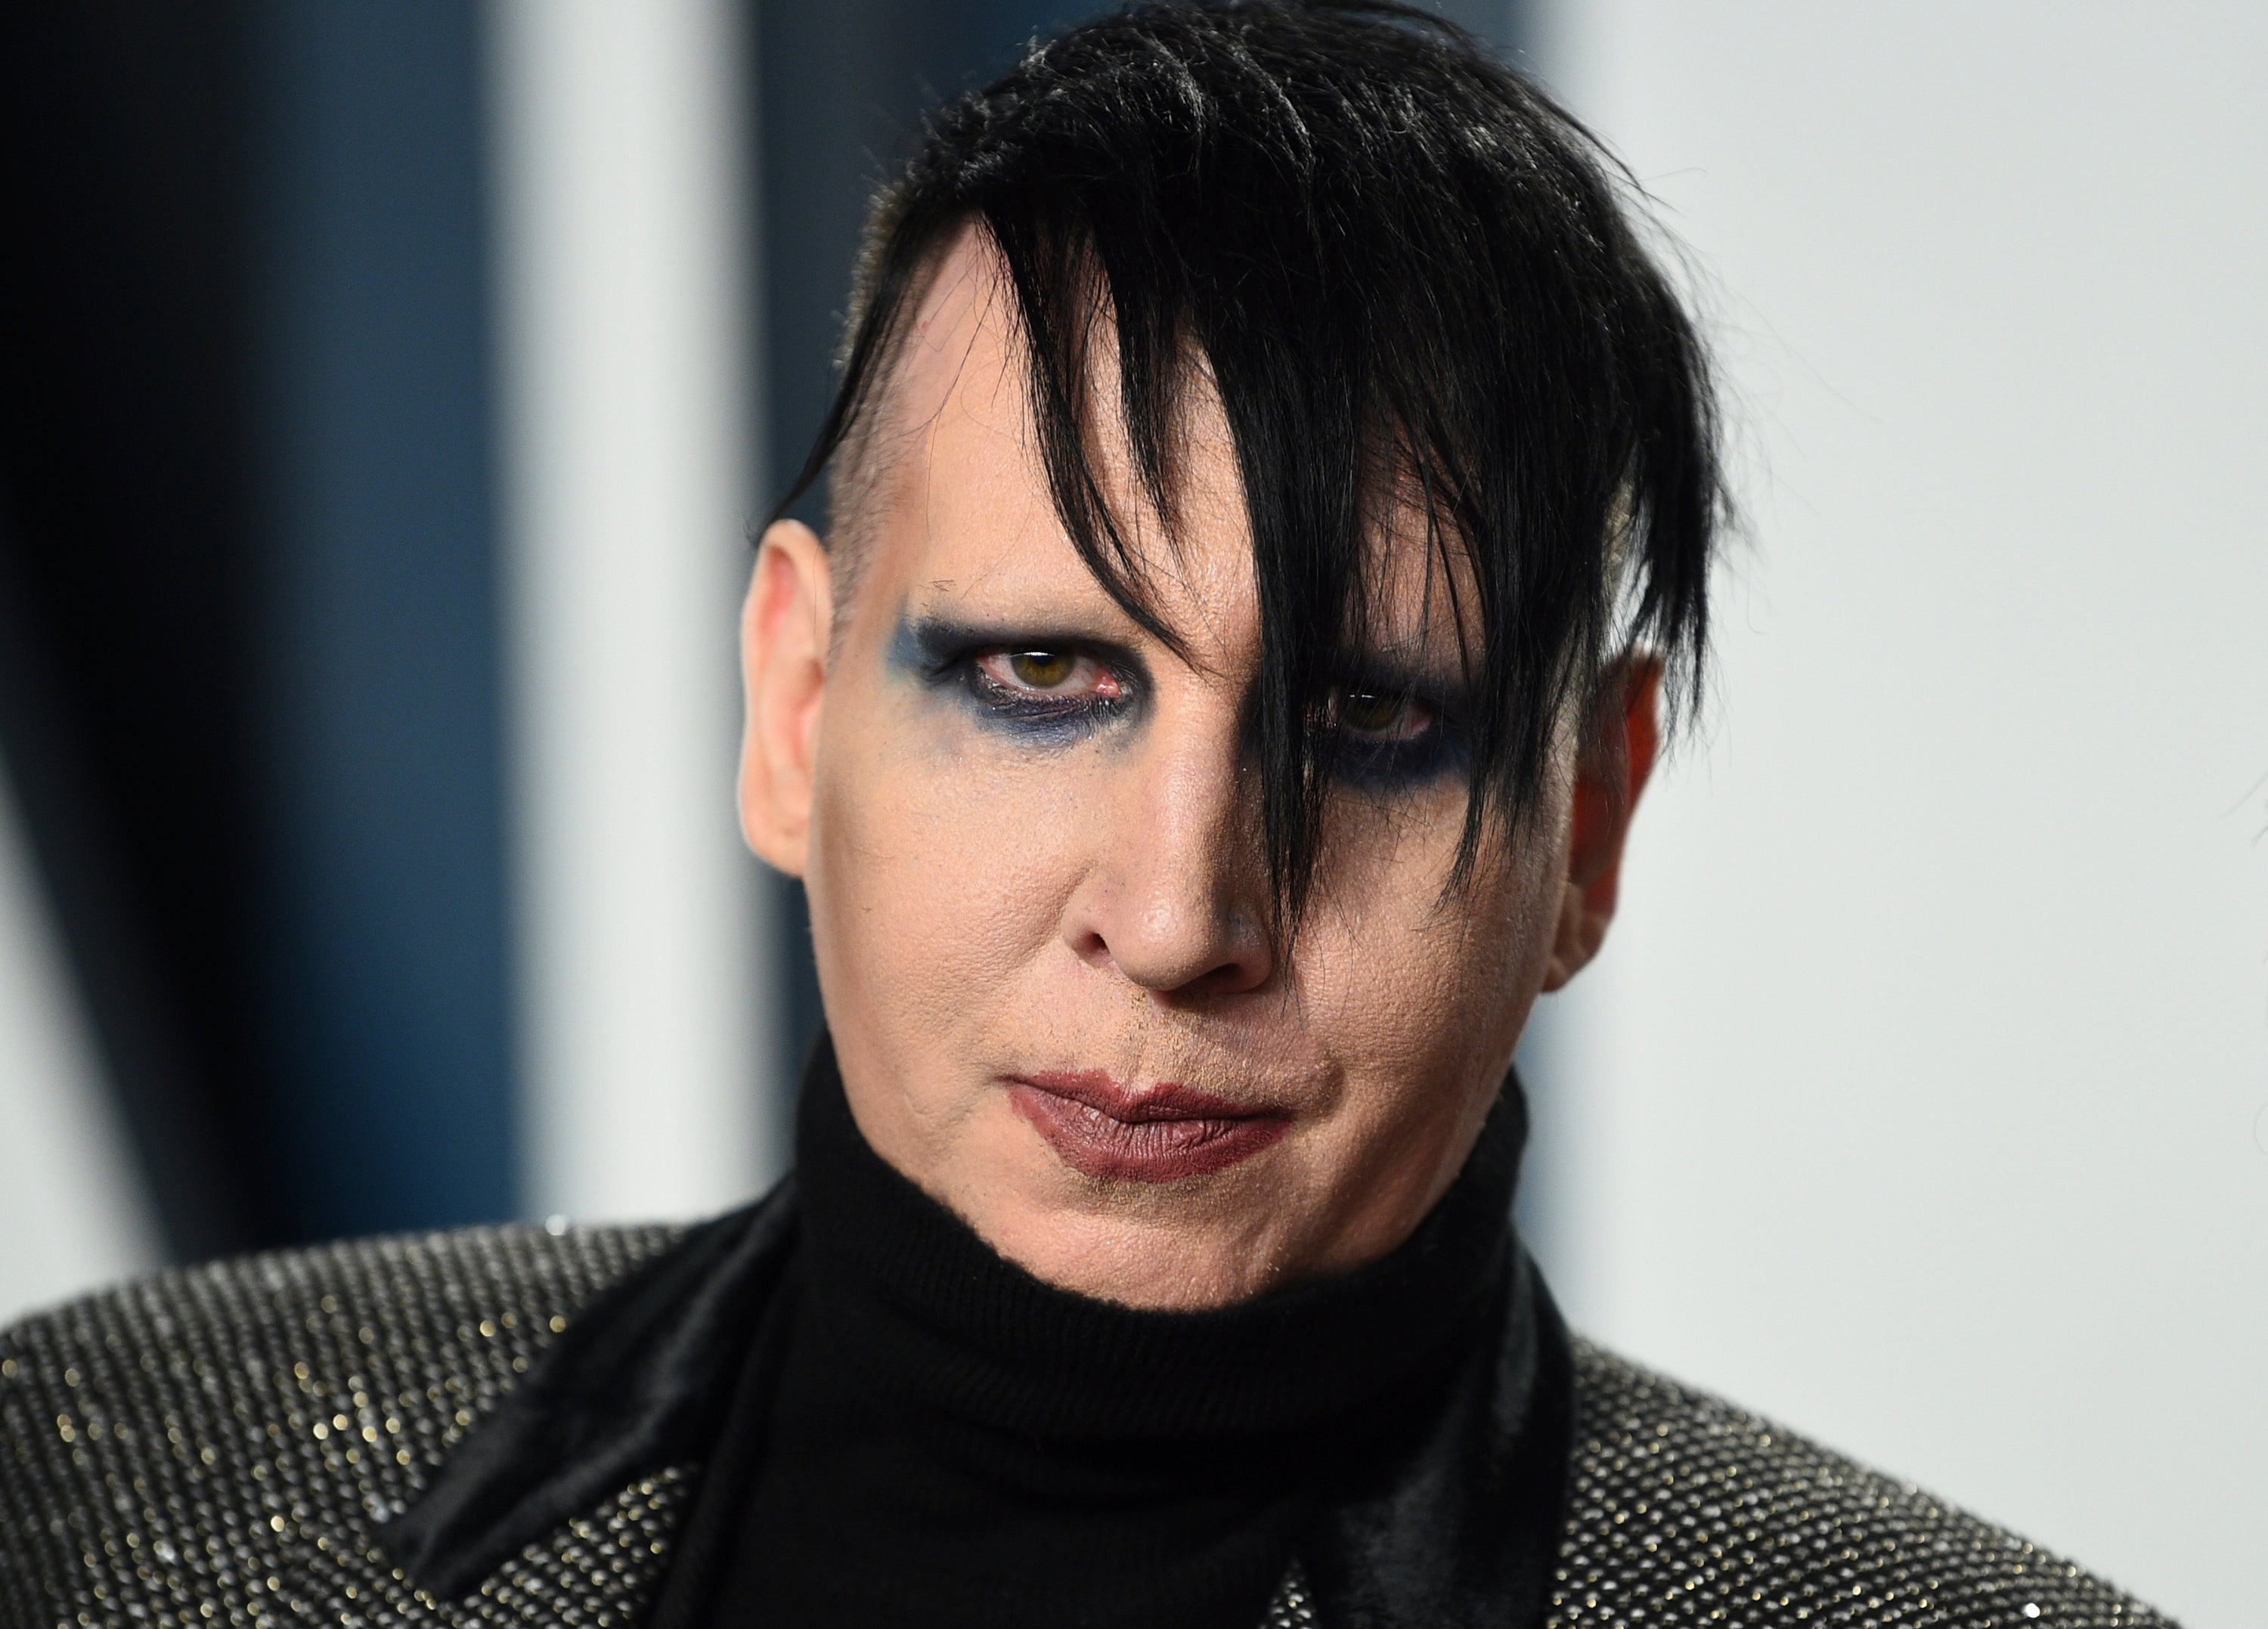 Marilyn Manson arrives at the Vanity Fair Oscar Party, Feb. 9, 2020